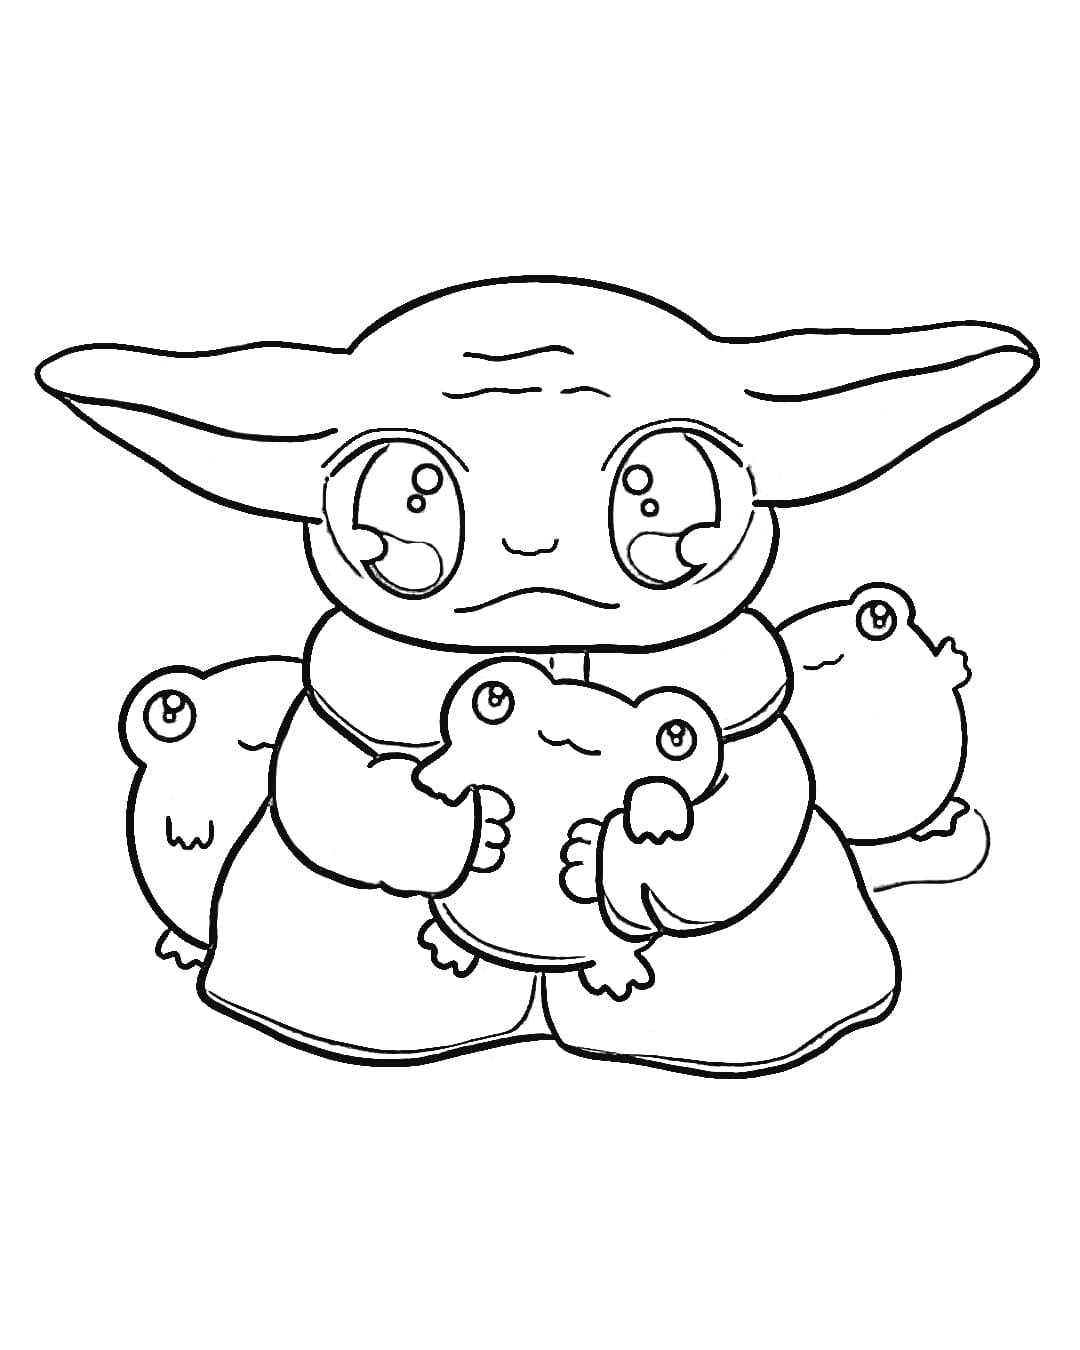 Para Colorear Baby Yoda Kawaii Imprimir